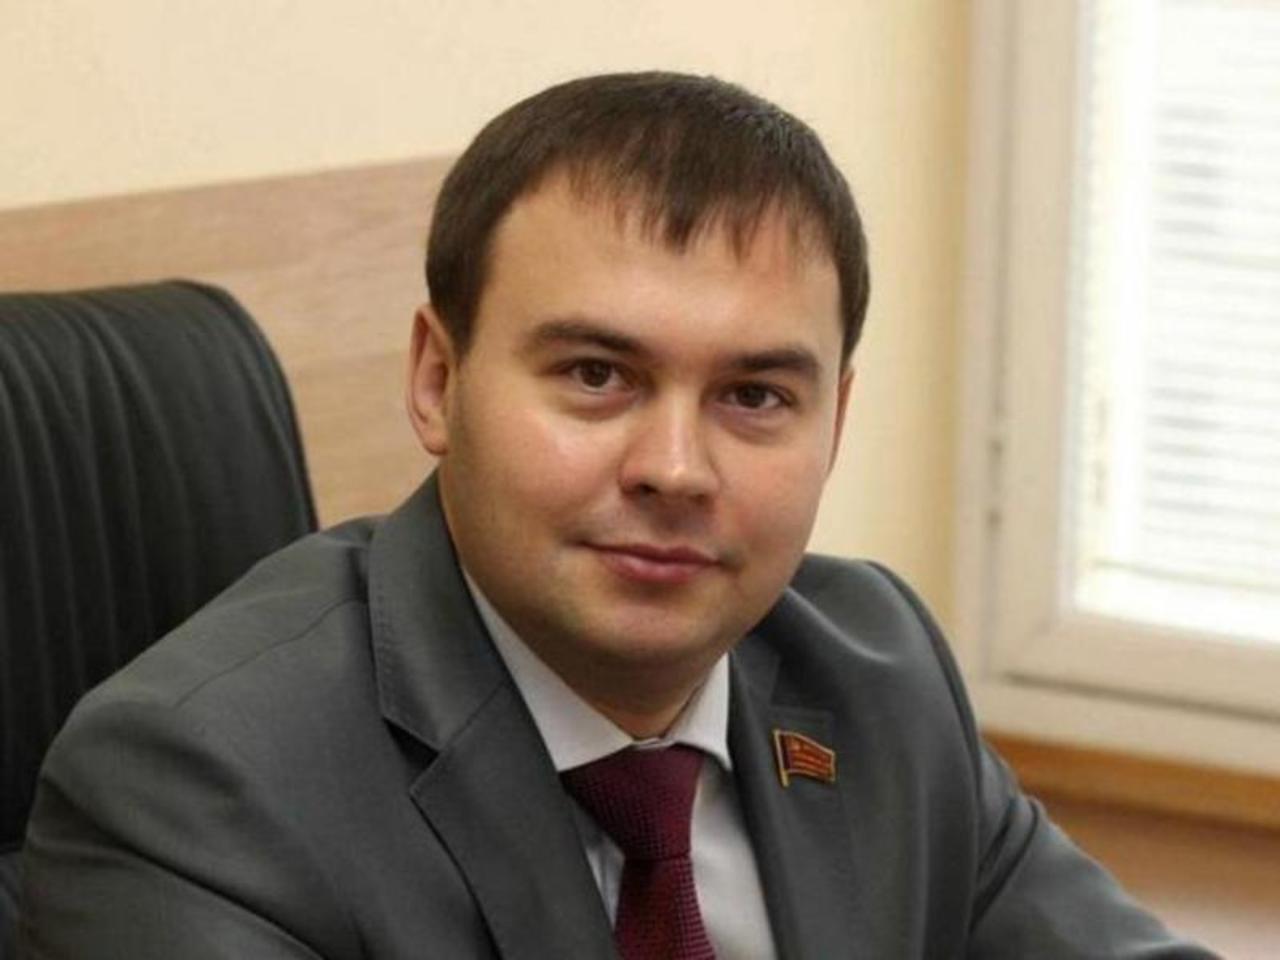 Юрий Афонин в эфире НТВ: «Эффективное импортозамещение при нынешнем экономическом курсе невозможно»